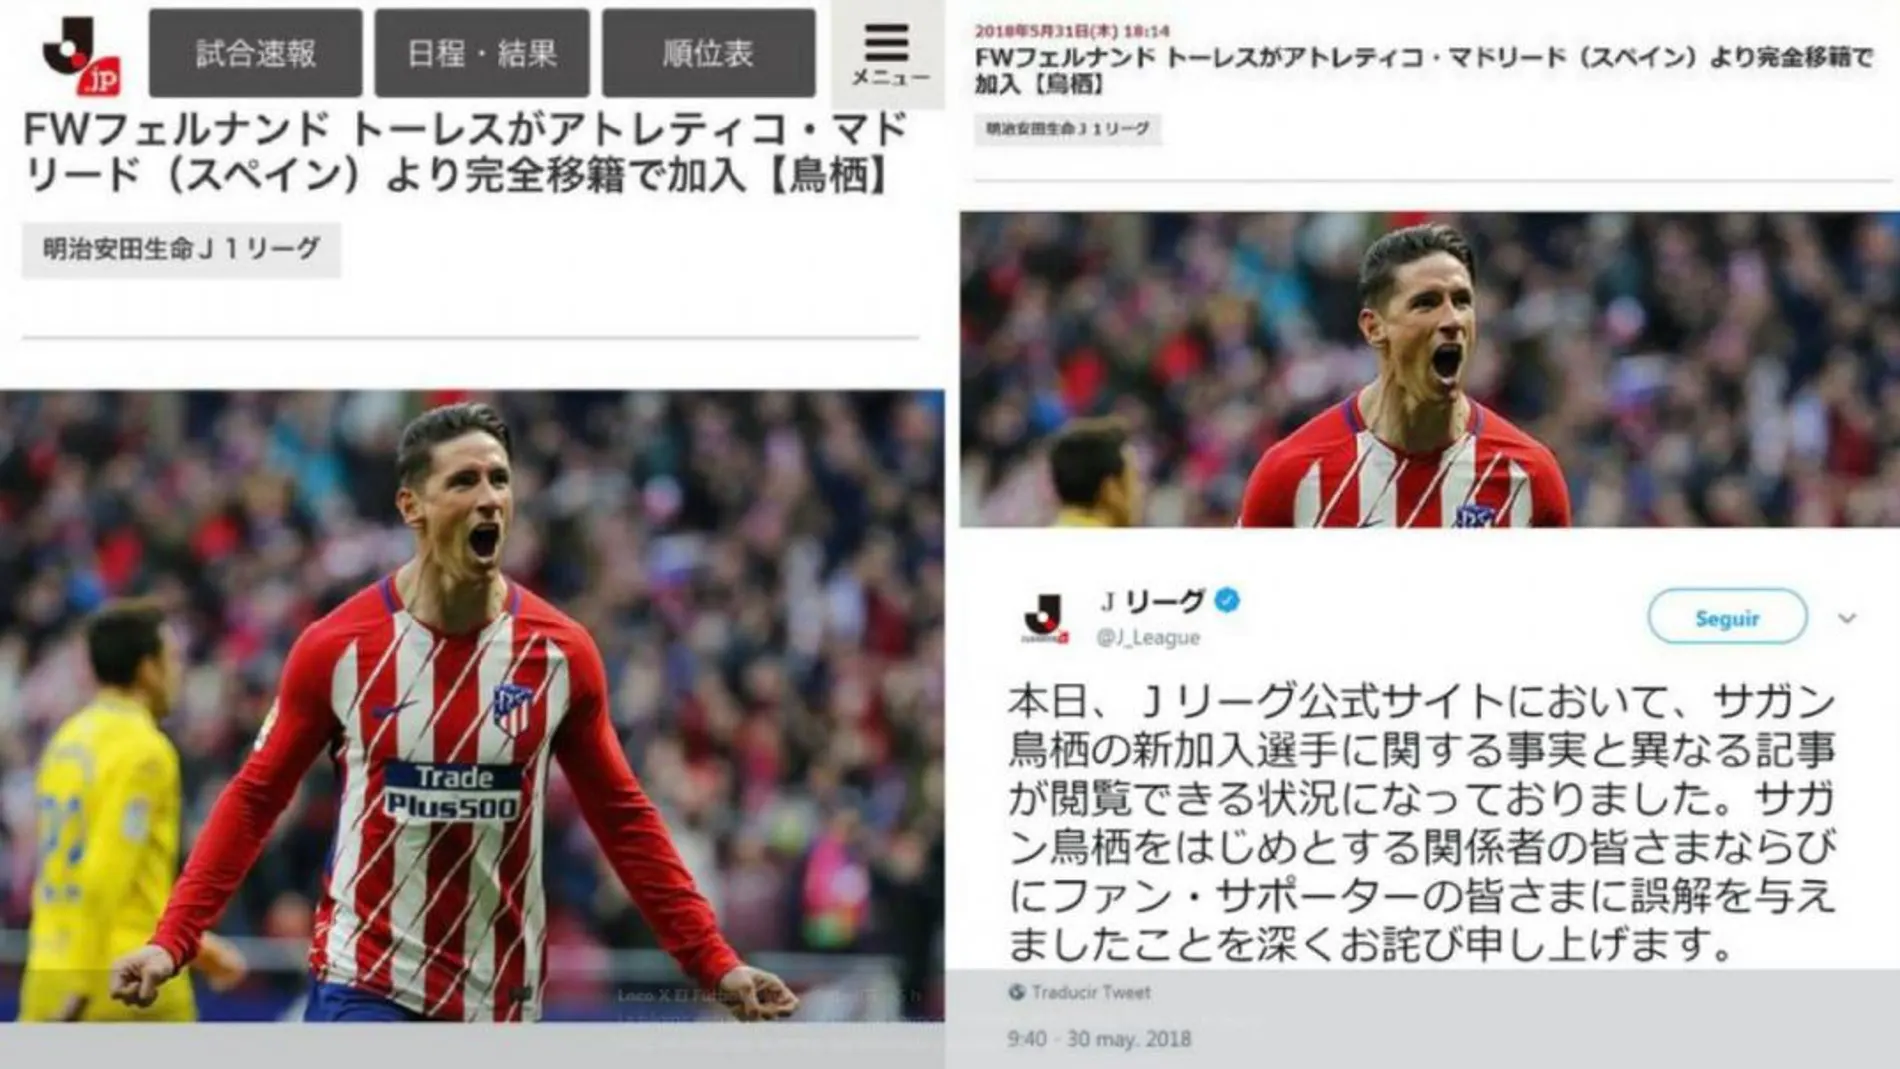 La noticia sobre la llegada de «El Niño» al Sagan Tosu fue publicada hoy con fecha del 31 de mayo en la web de la J-League / Twitter